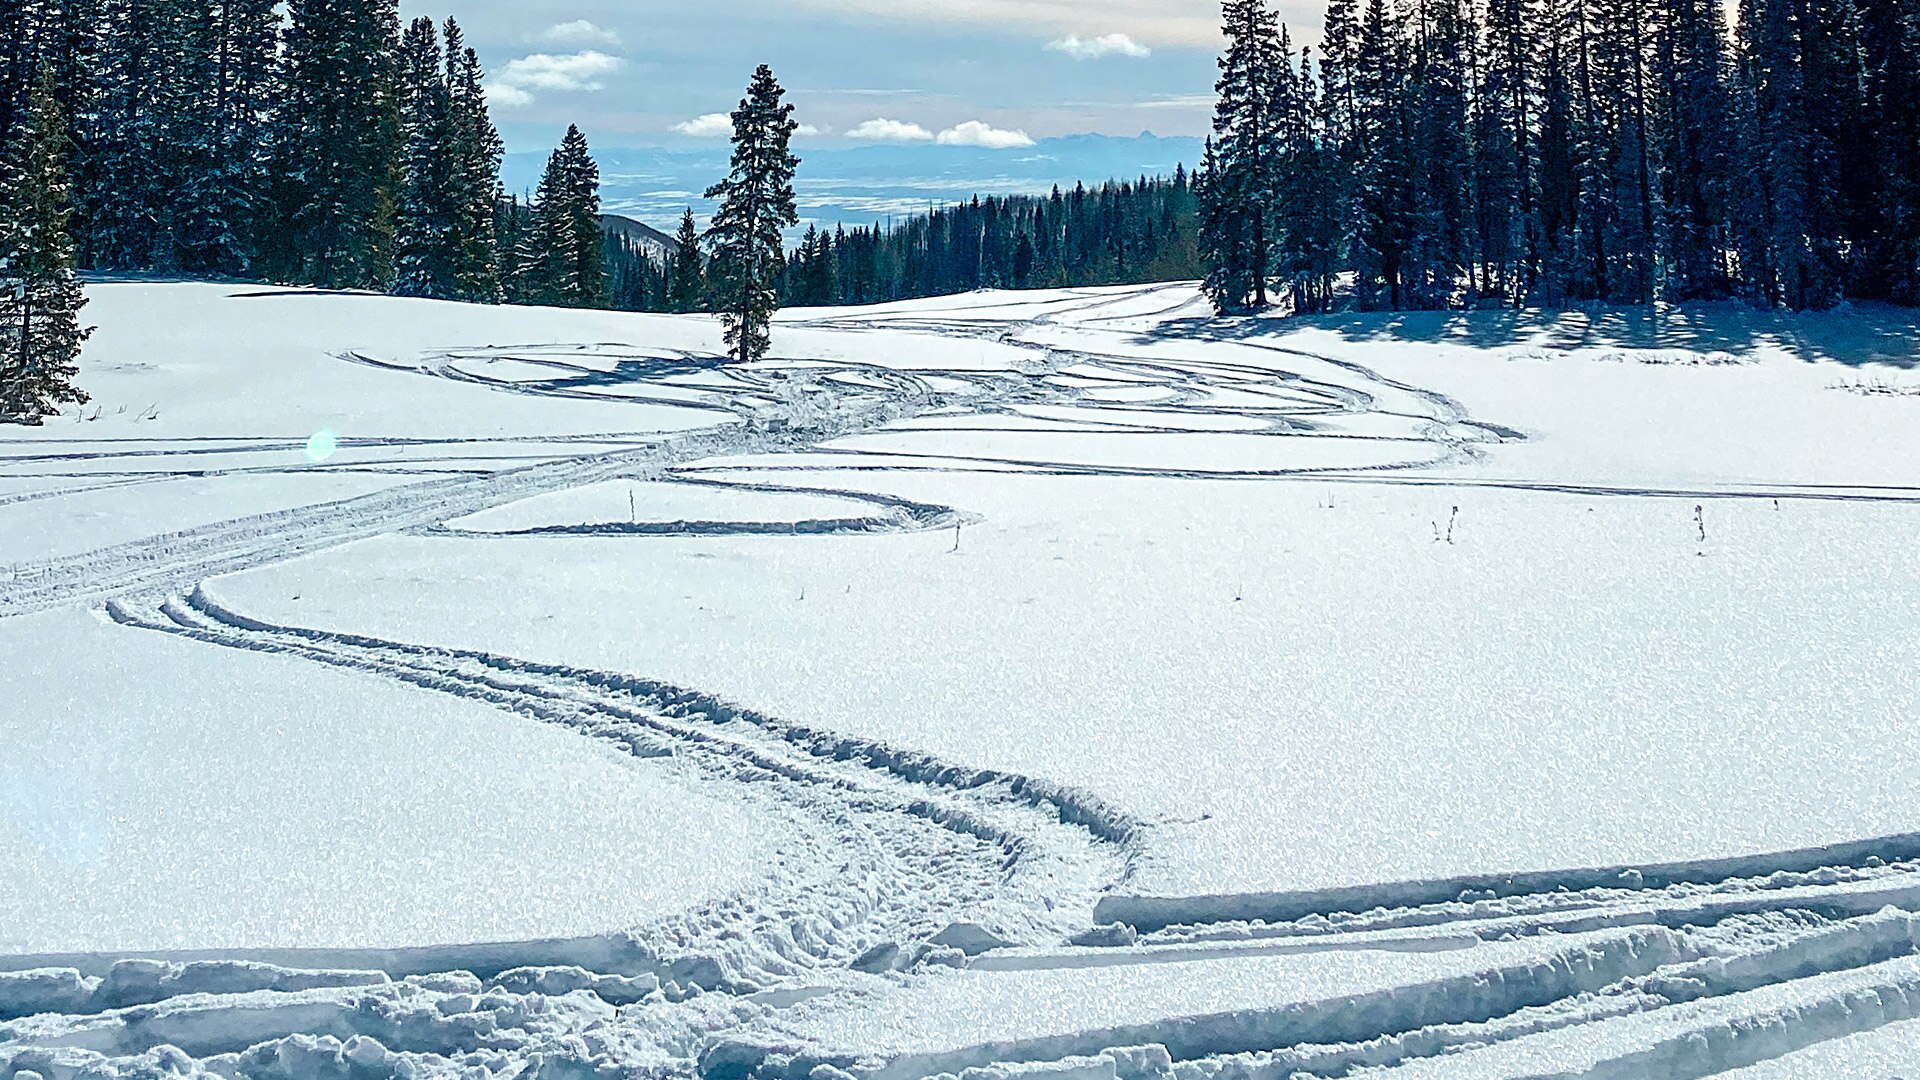 Ski-Doo snowmobile tracks in the snow